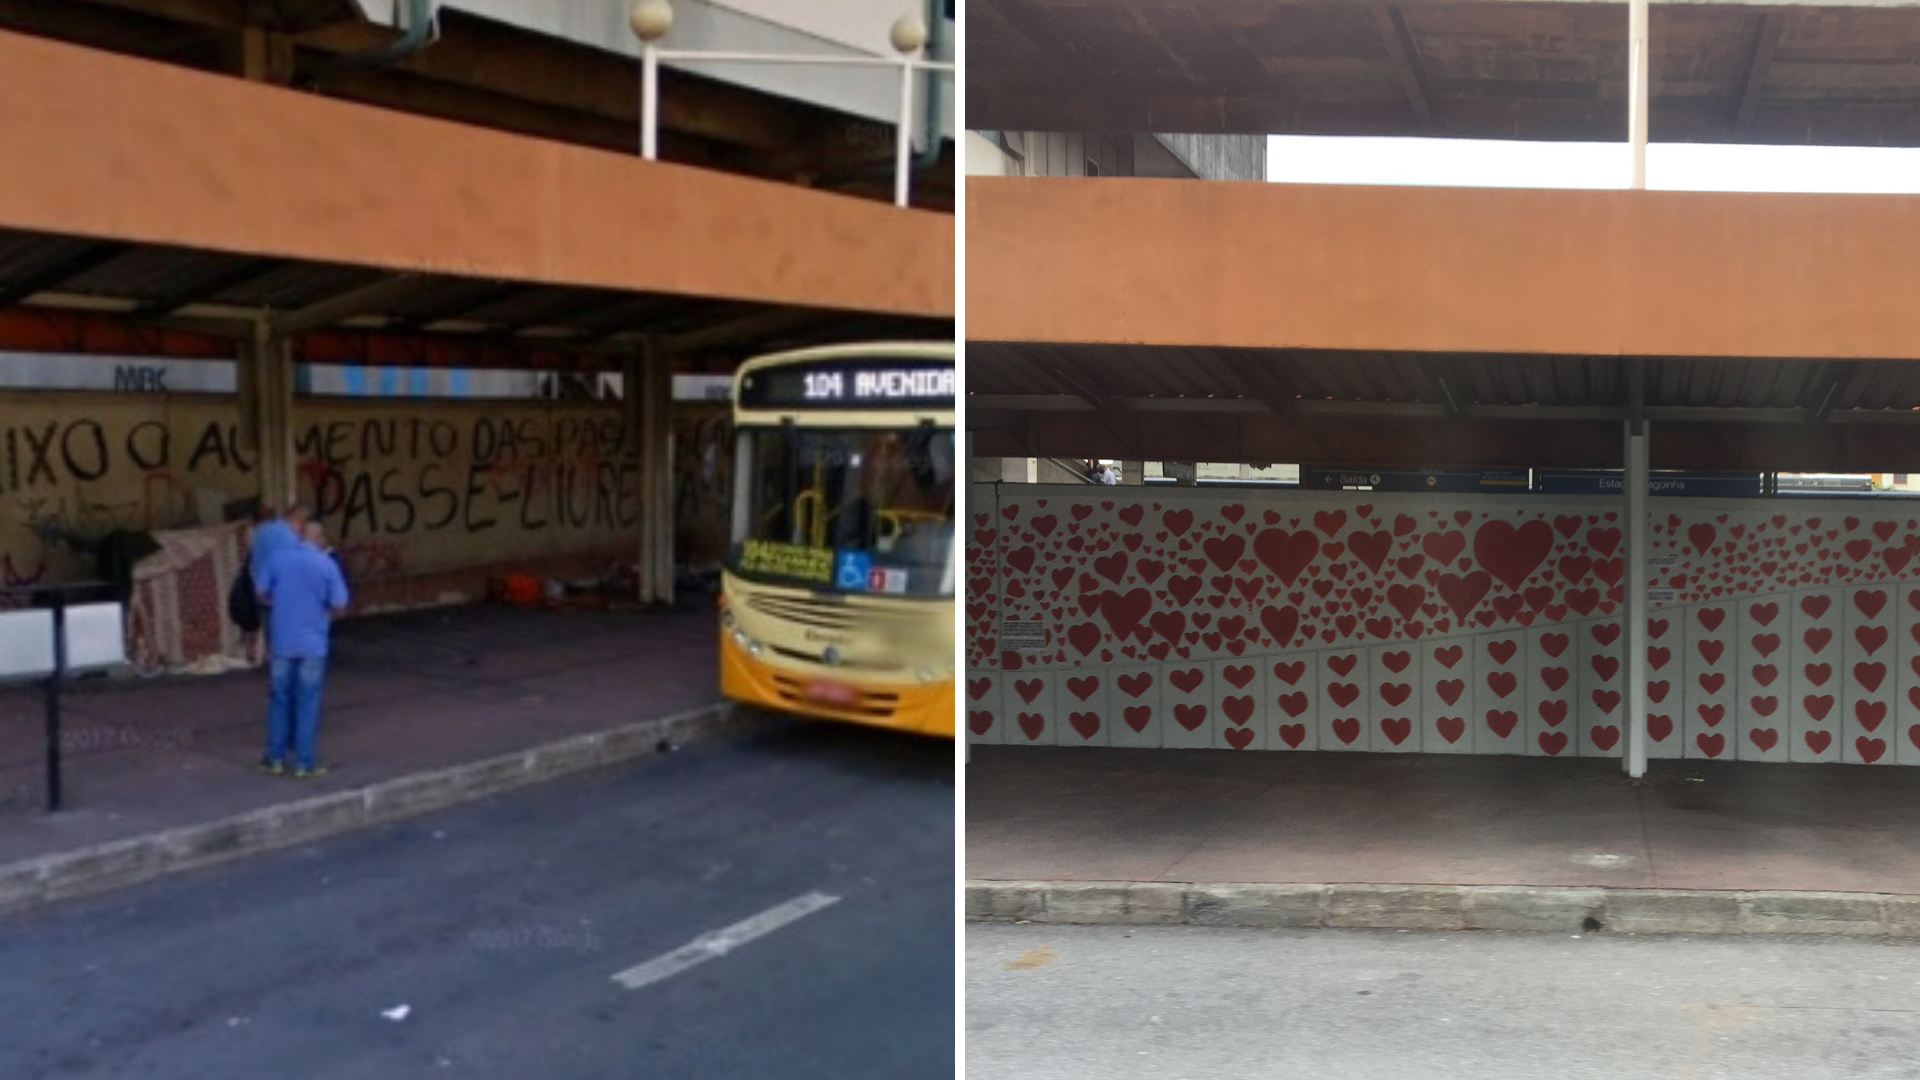 Estação de Metrô da Lagoinha antes e depois do desaparecimento das pessoas em situação de rua. Foto 1 pela Prefeitura de Belo Horizonte. Foto 2 por  Isadora Ribeiro